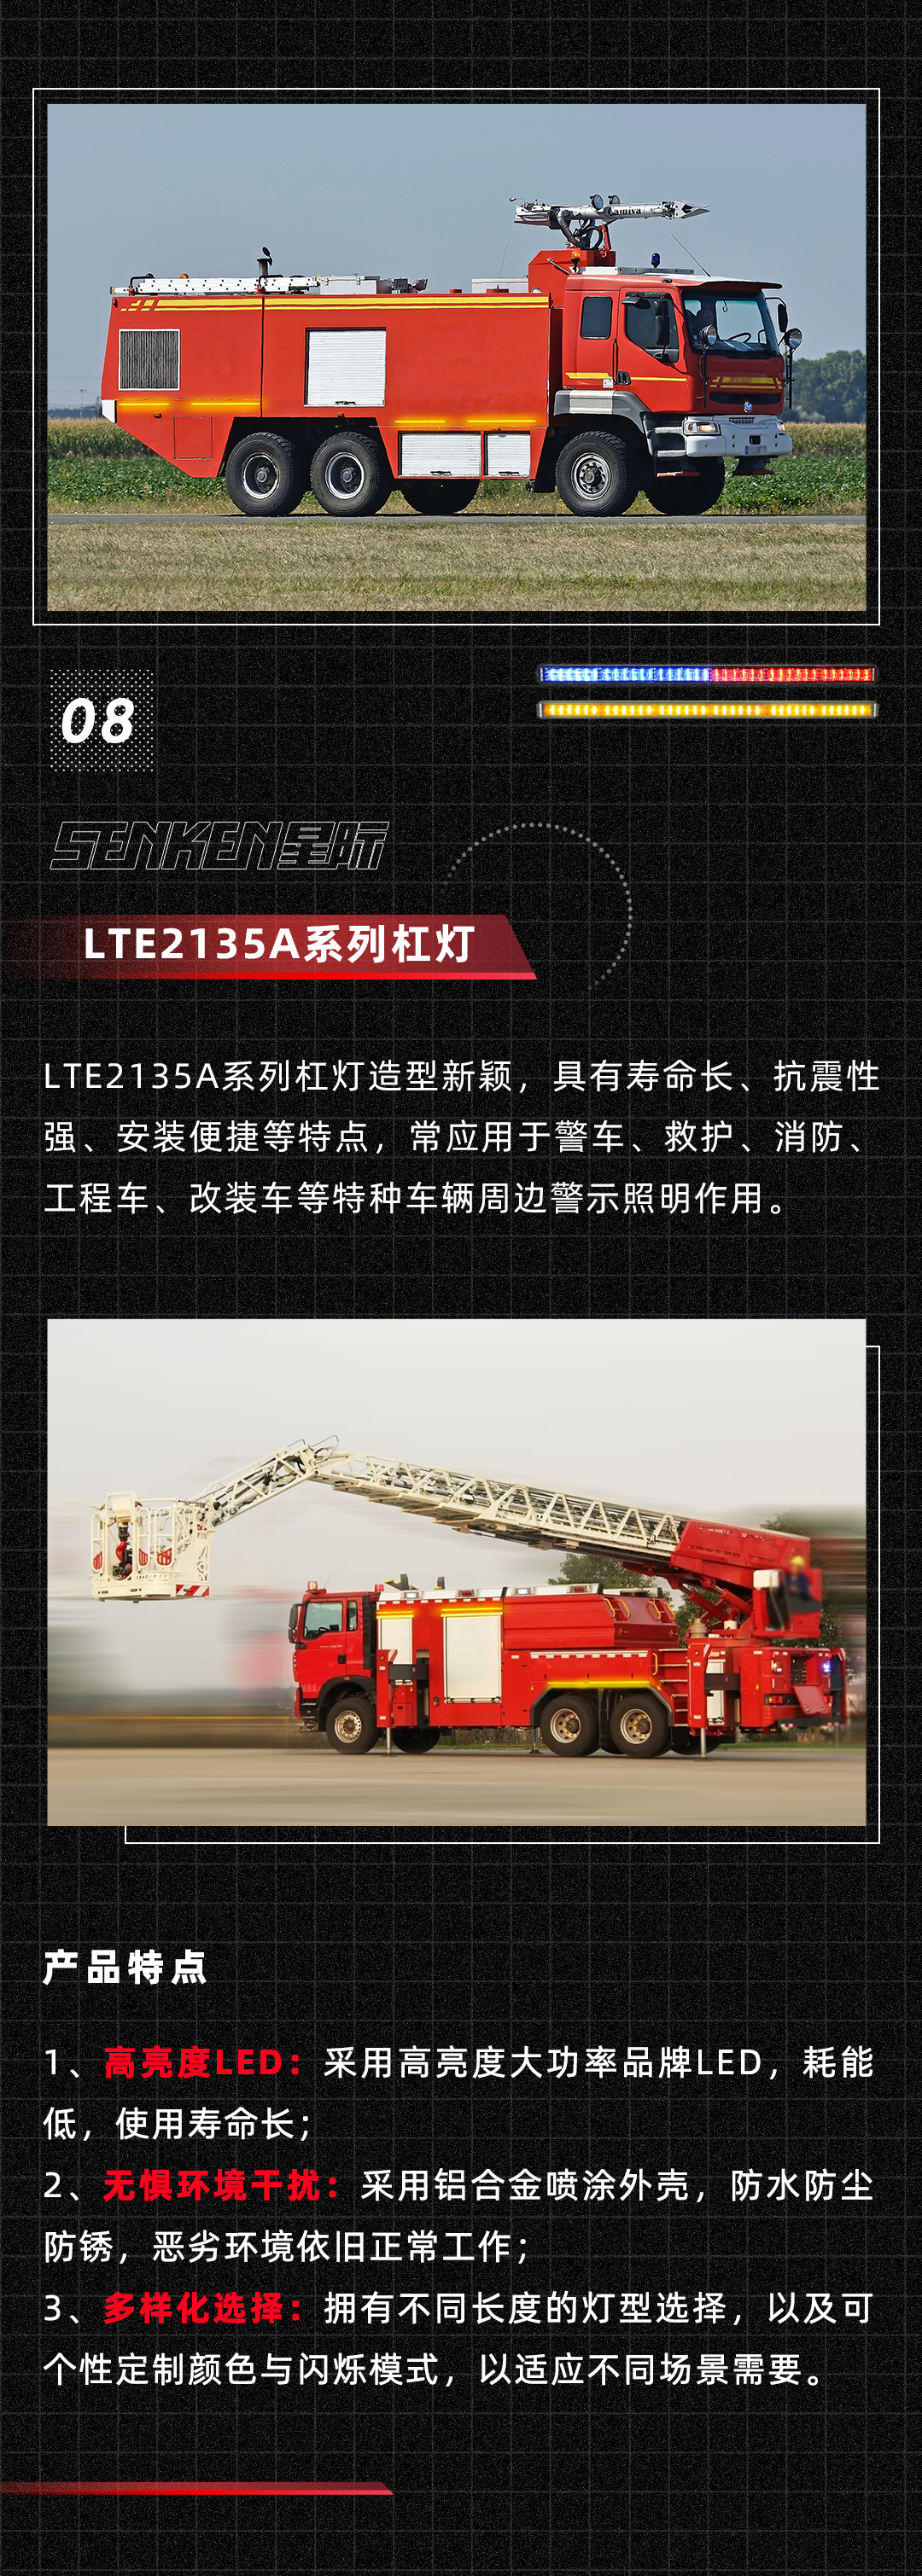 消防车侧面_11.png